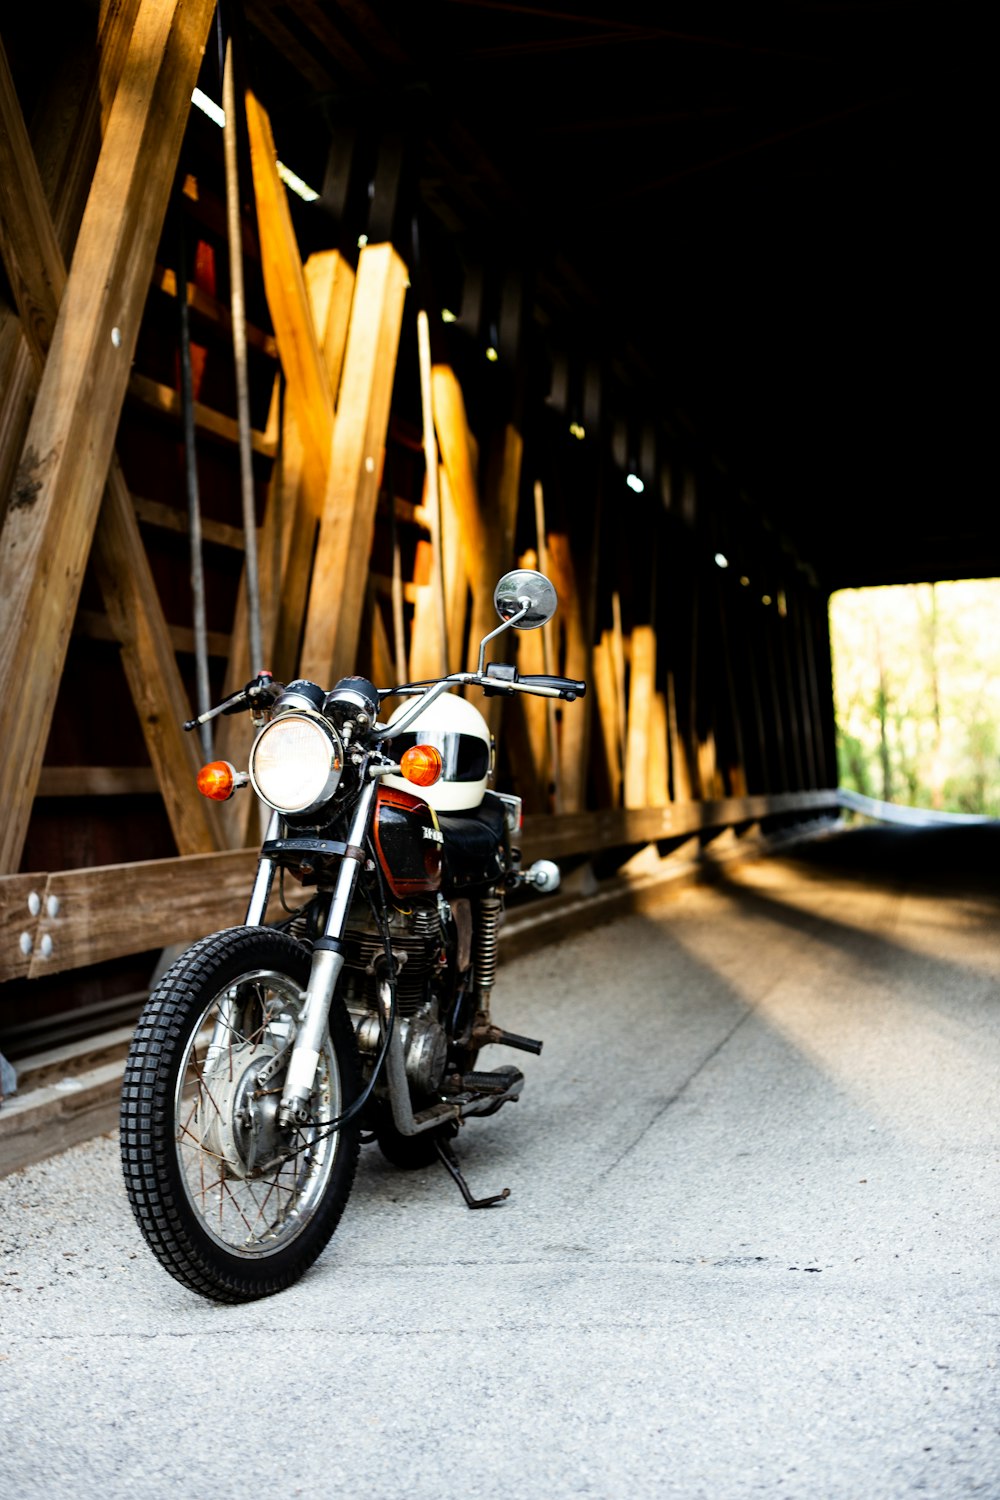 Motocicleta preta perto da ponte marrom do túnel de madeira